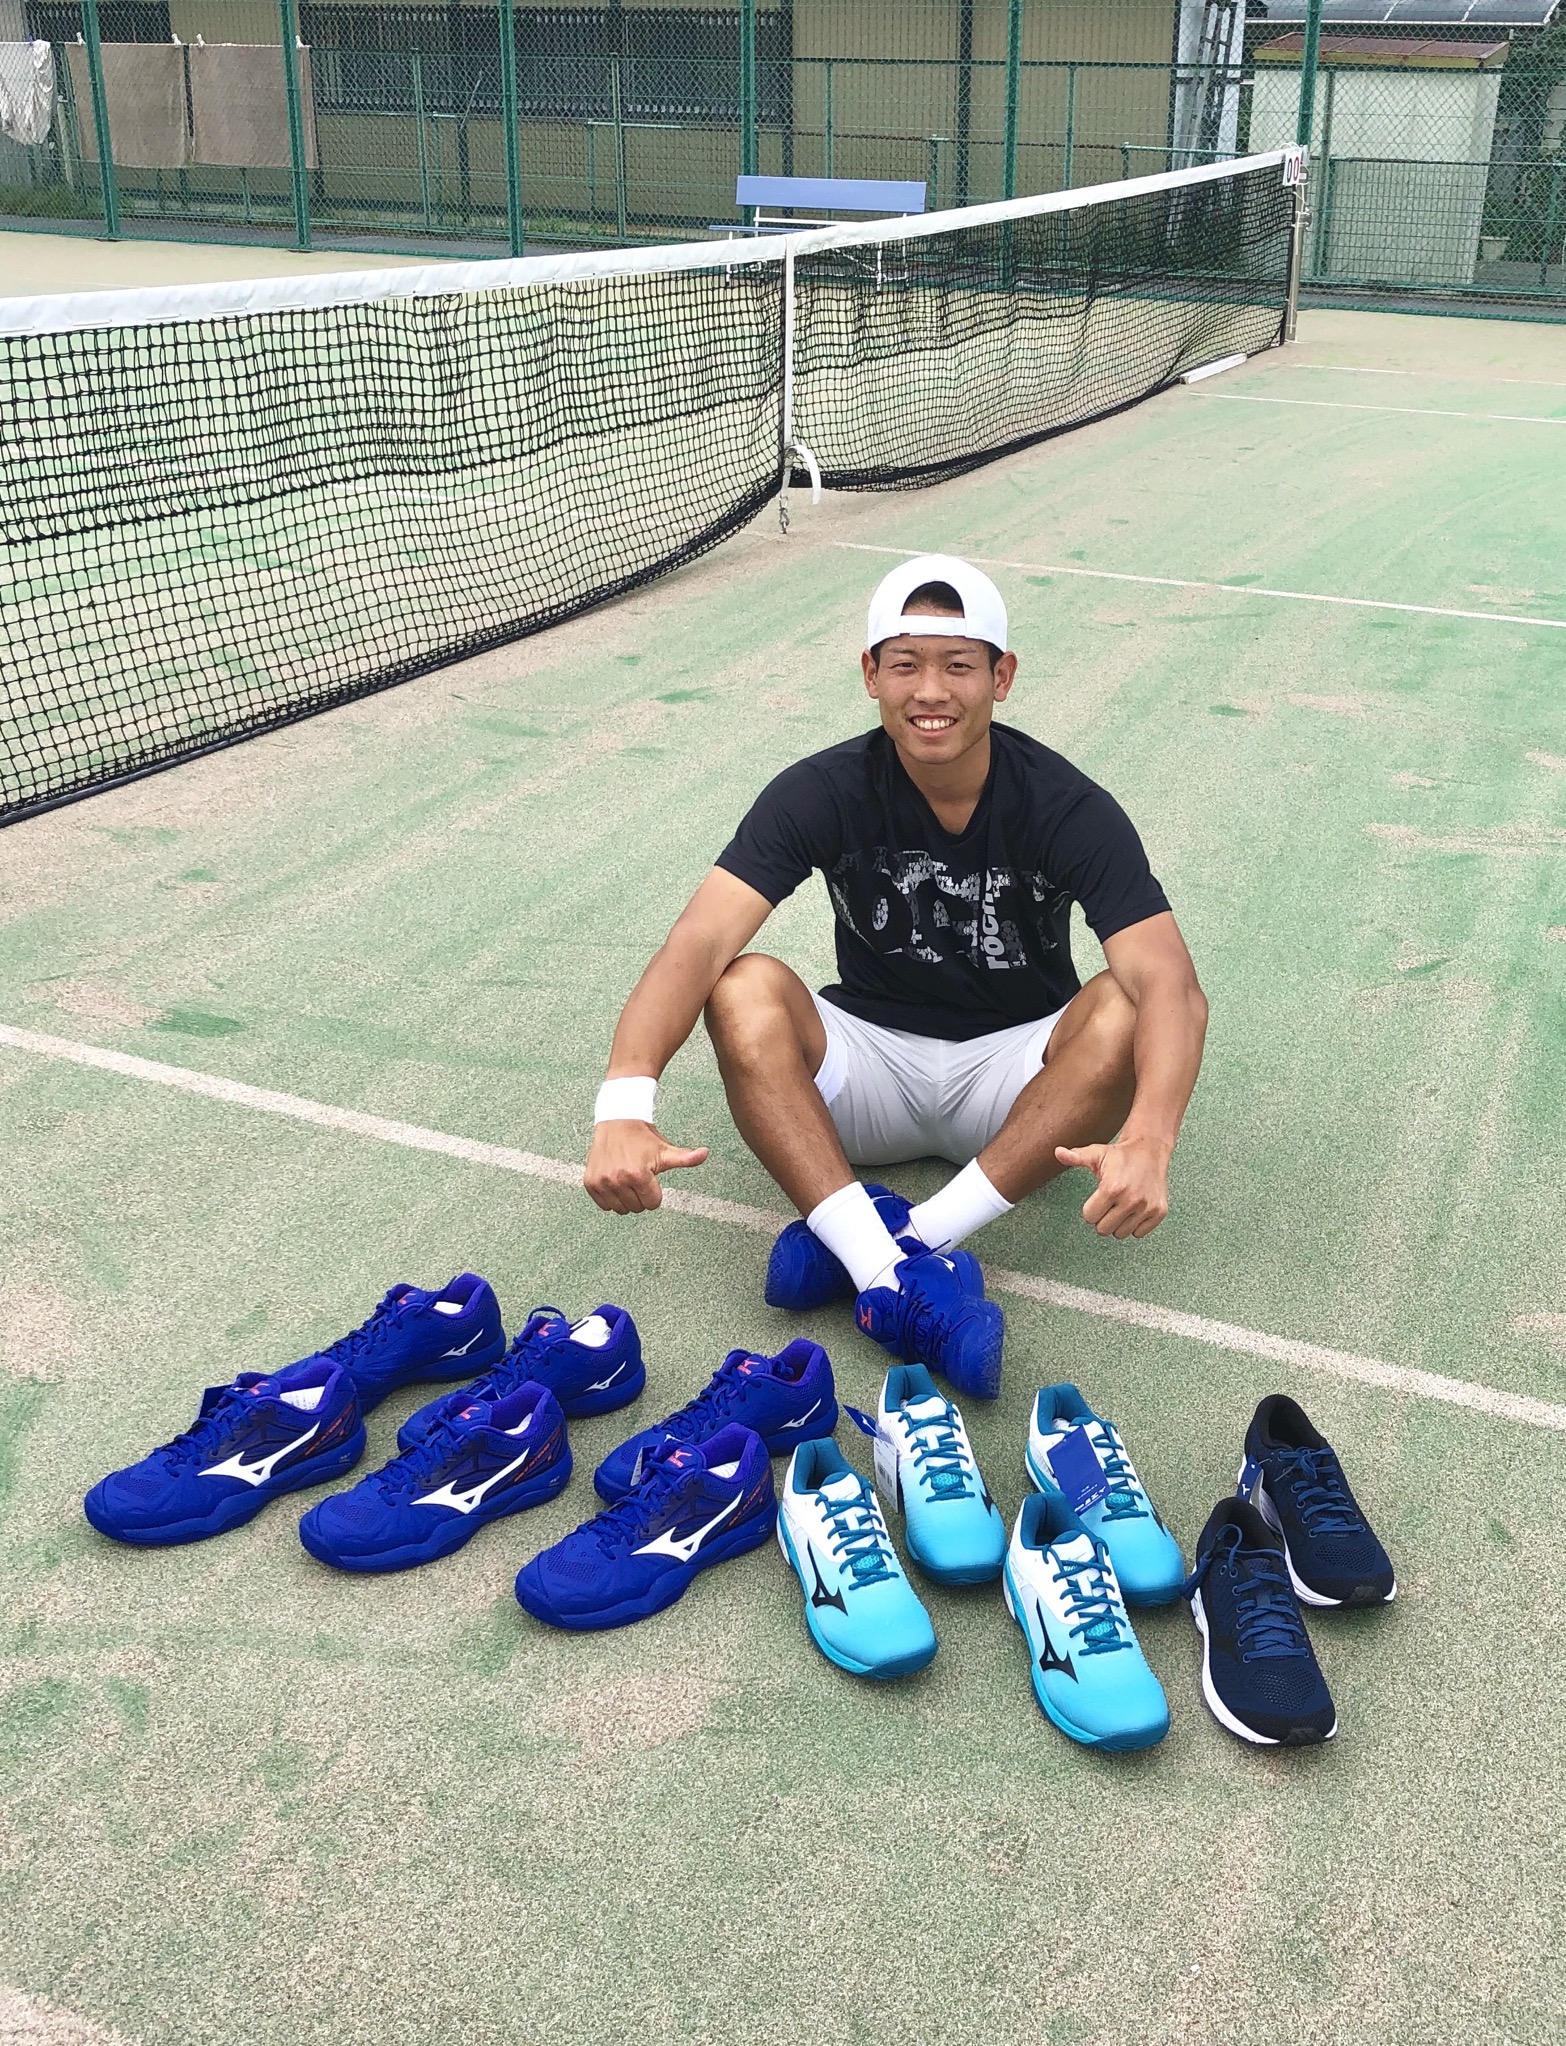 ミズノ | プロテニスプレイヤー斉藤貴史オフィシャルブログ